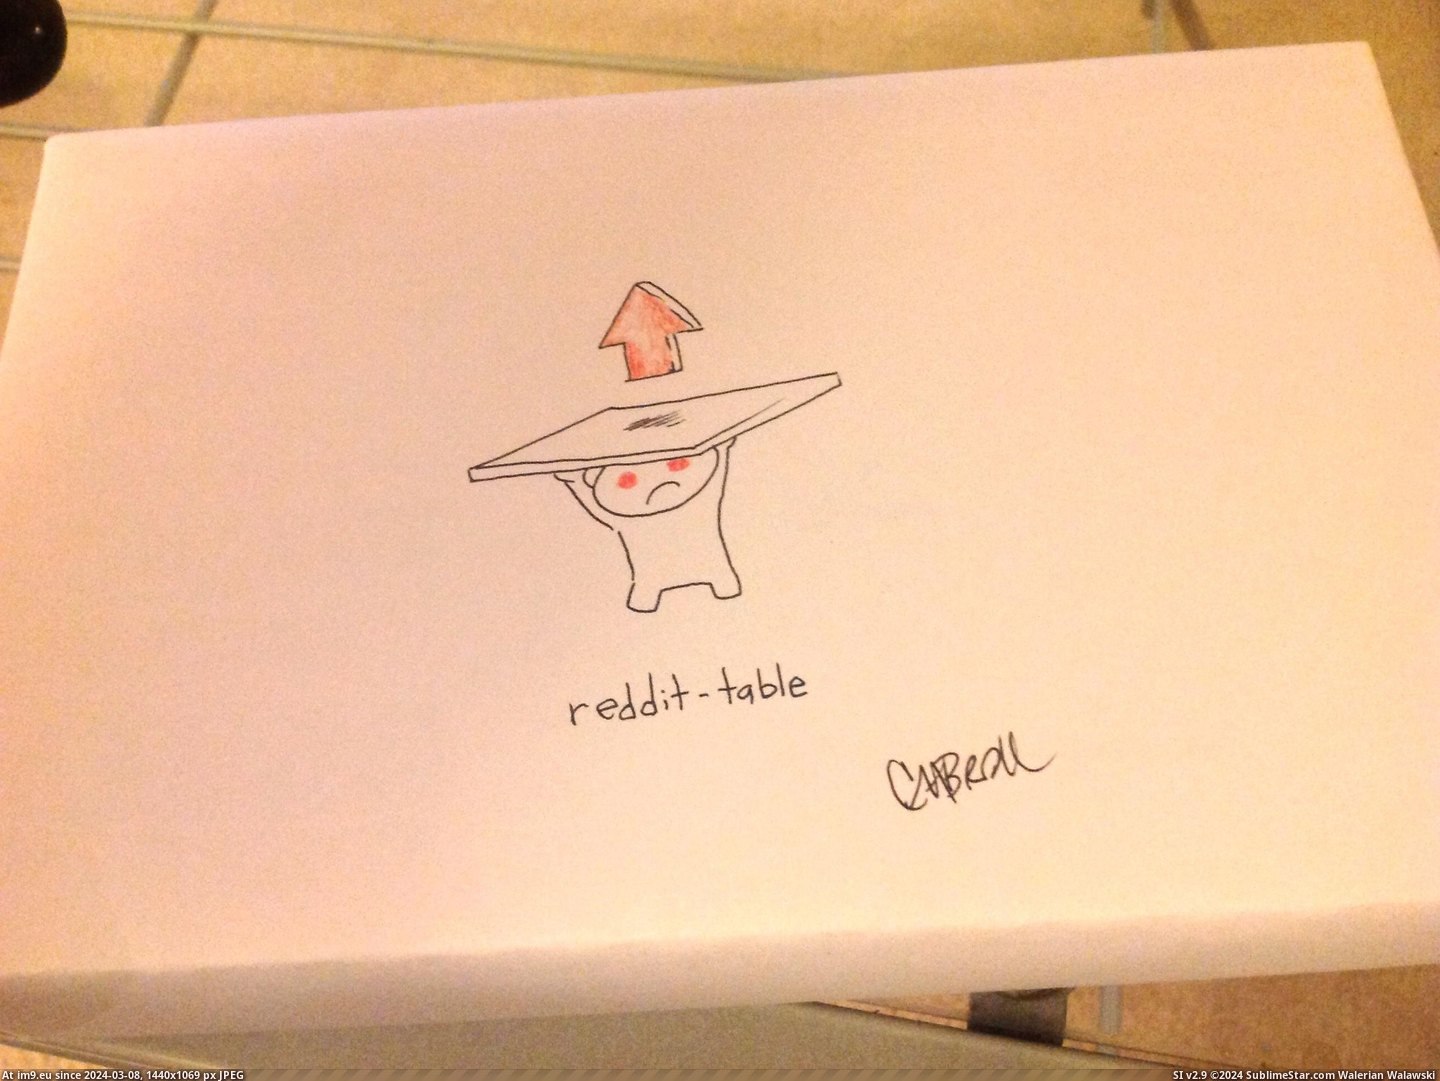 #Box #Redditable #Draw [Pics] 'Please draw something redditable on the box' 2 Pic. (Obraz z album My r/PICS favs))